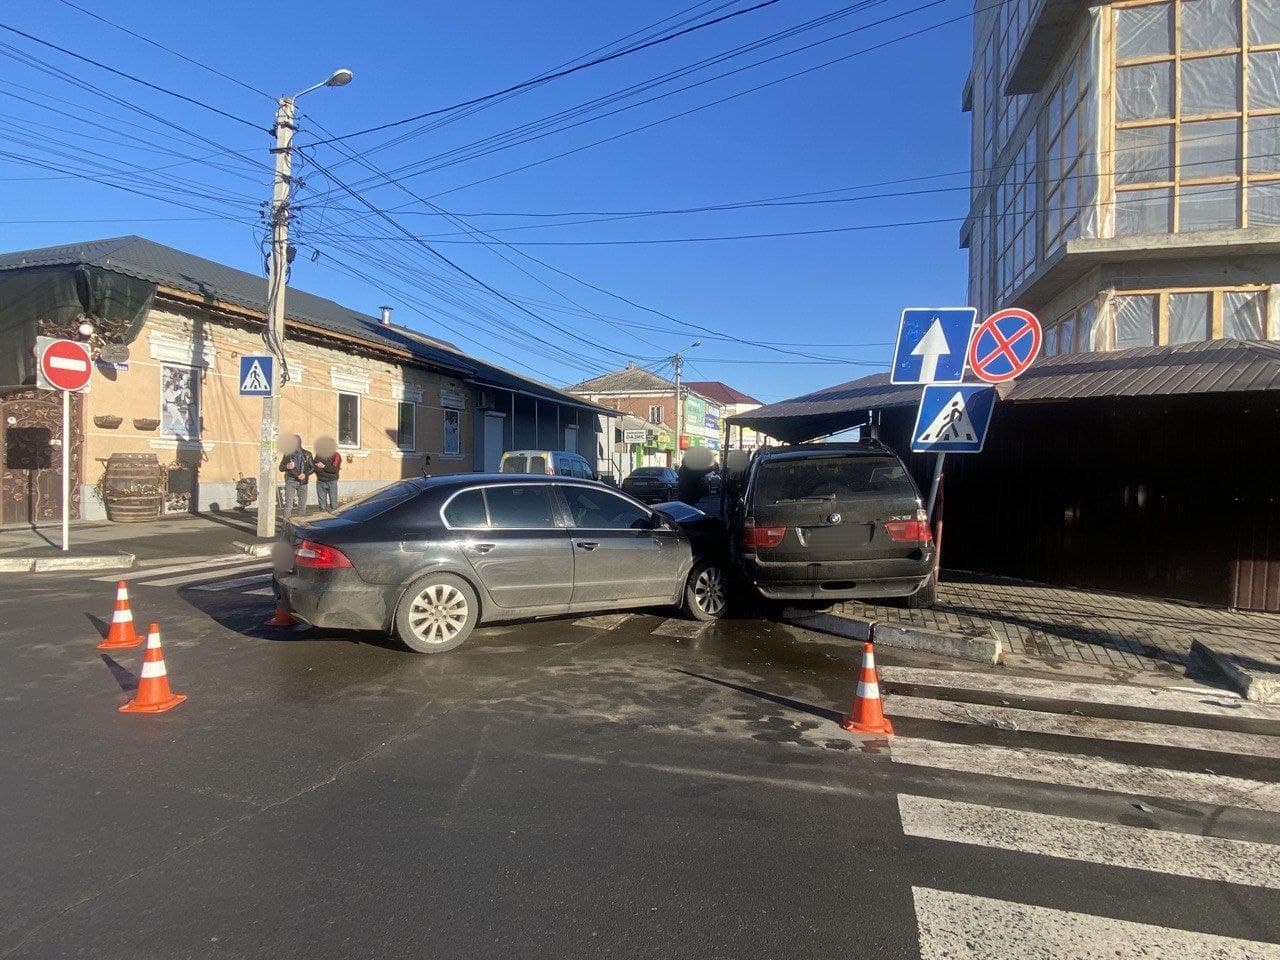 ДТП в Измаиле: в районе Центрального рынка Skoda вытолкала BMW X5 на тротуар, есть пострадавшие